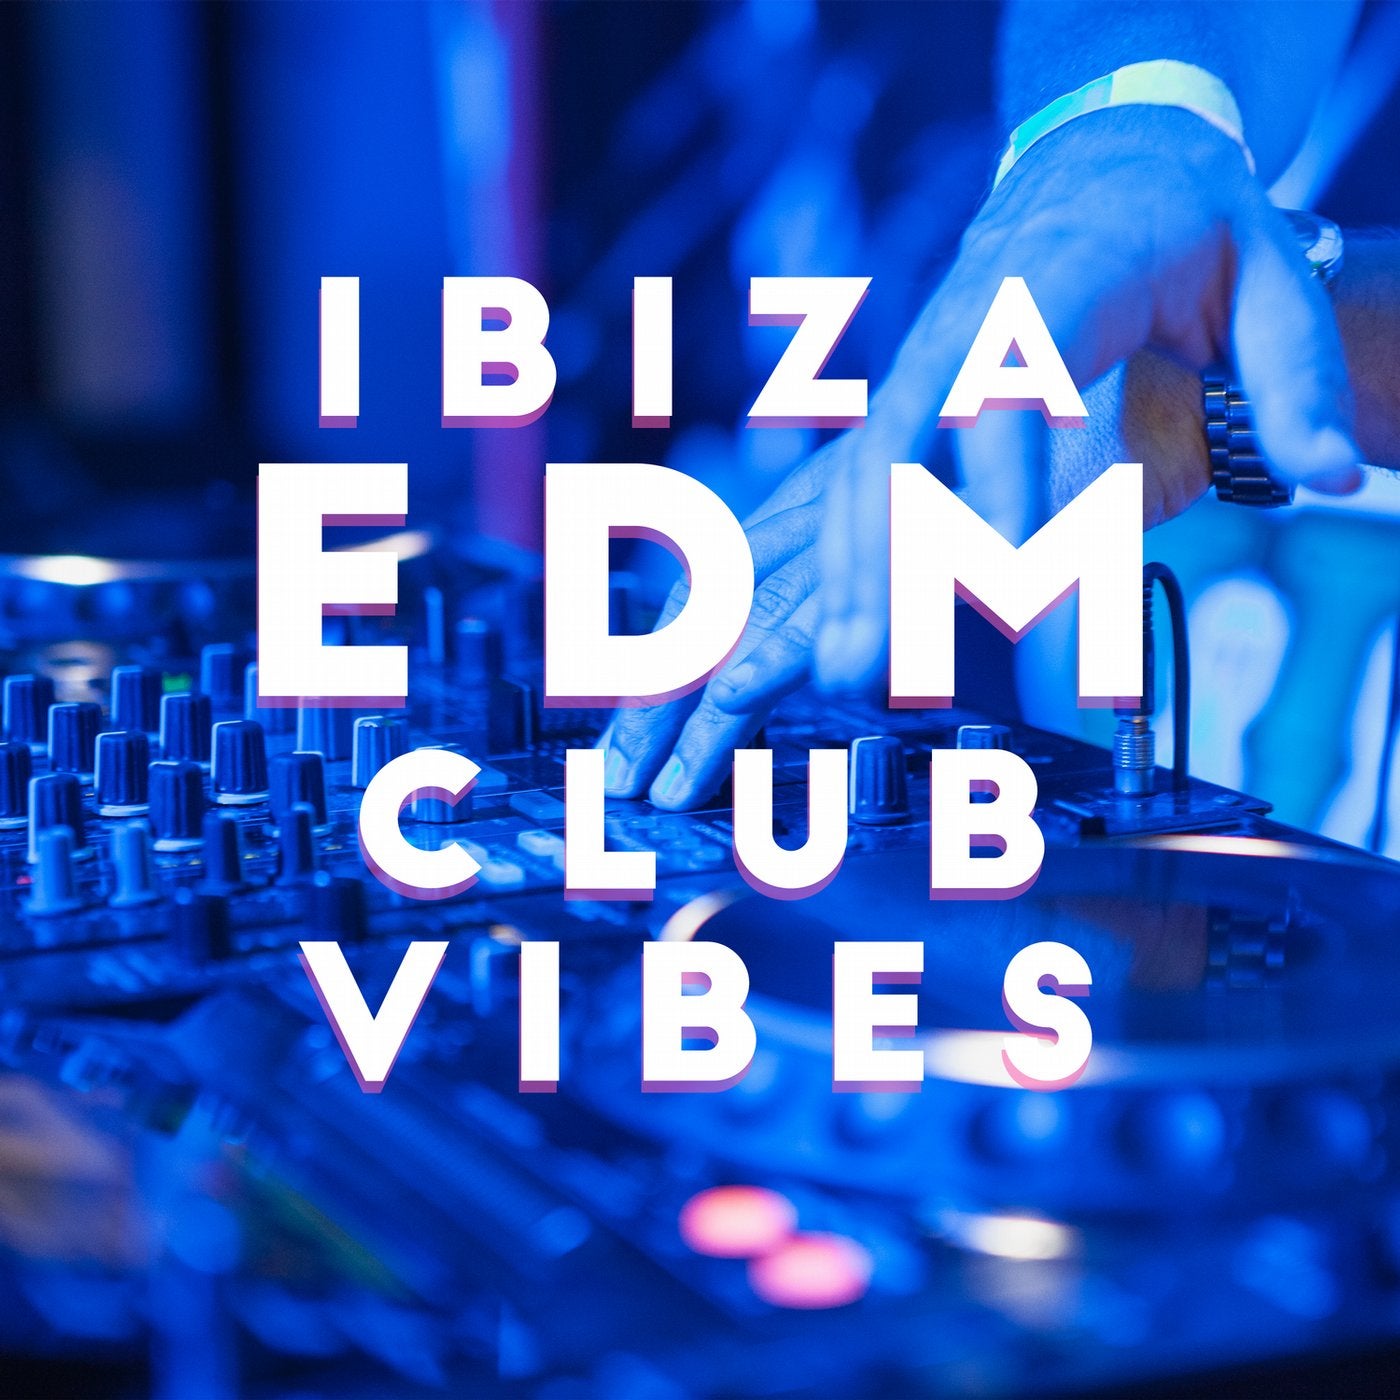 Ibiza EDM Club Vibes